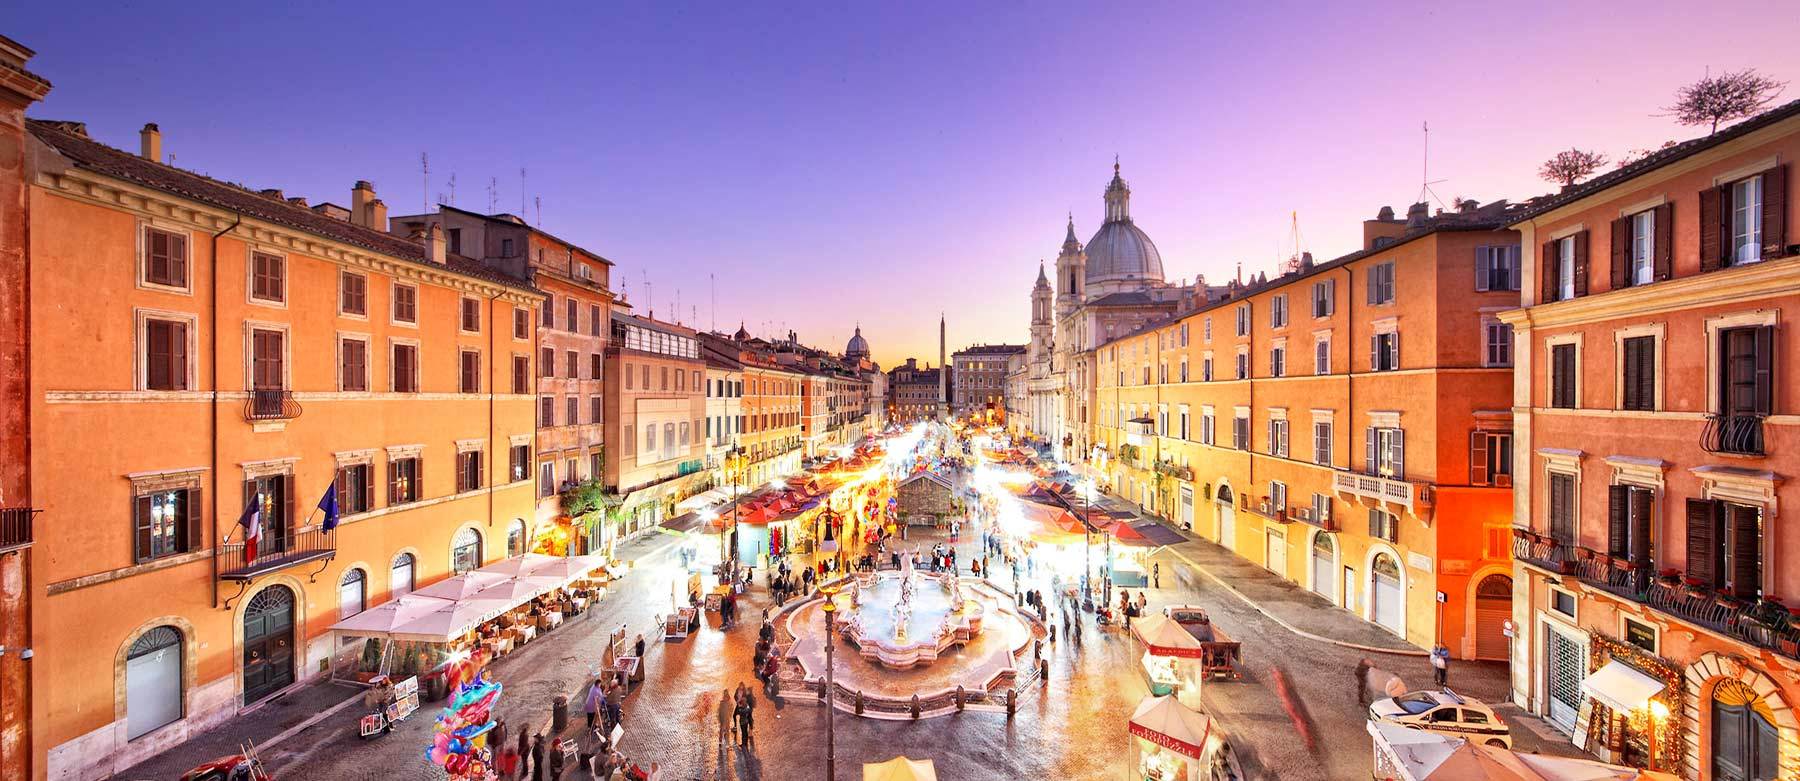 4 отличных тура на Рождество в Италии: Альпы + Милан, Абано Терме, Рим и СПА-отдых